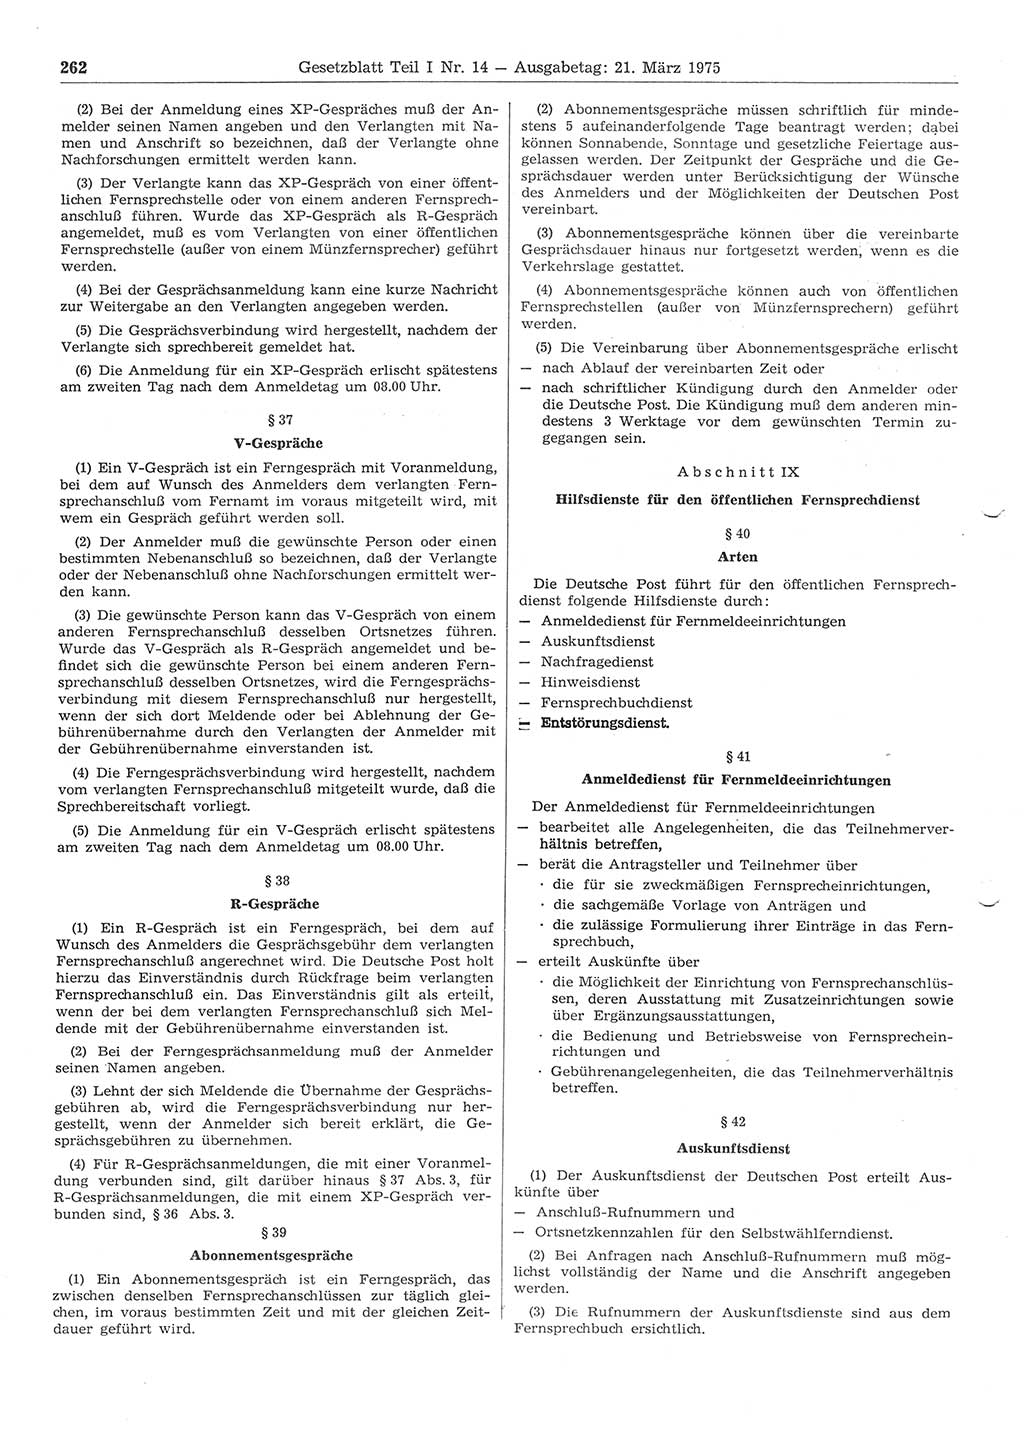 Gesetzblatt (GBl.) der Deutschen Demokratischen Republik (DDR) Teil Ⅰ 1975, Seite 262 (GBl. DDR Ⅰ 1975, S. 262)